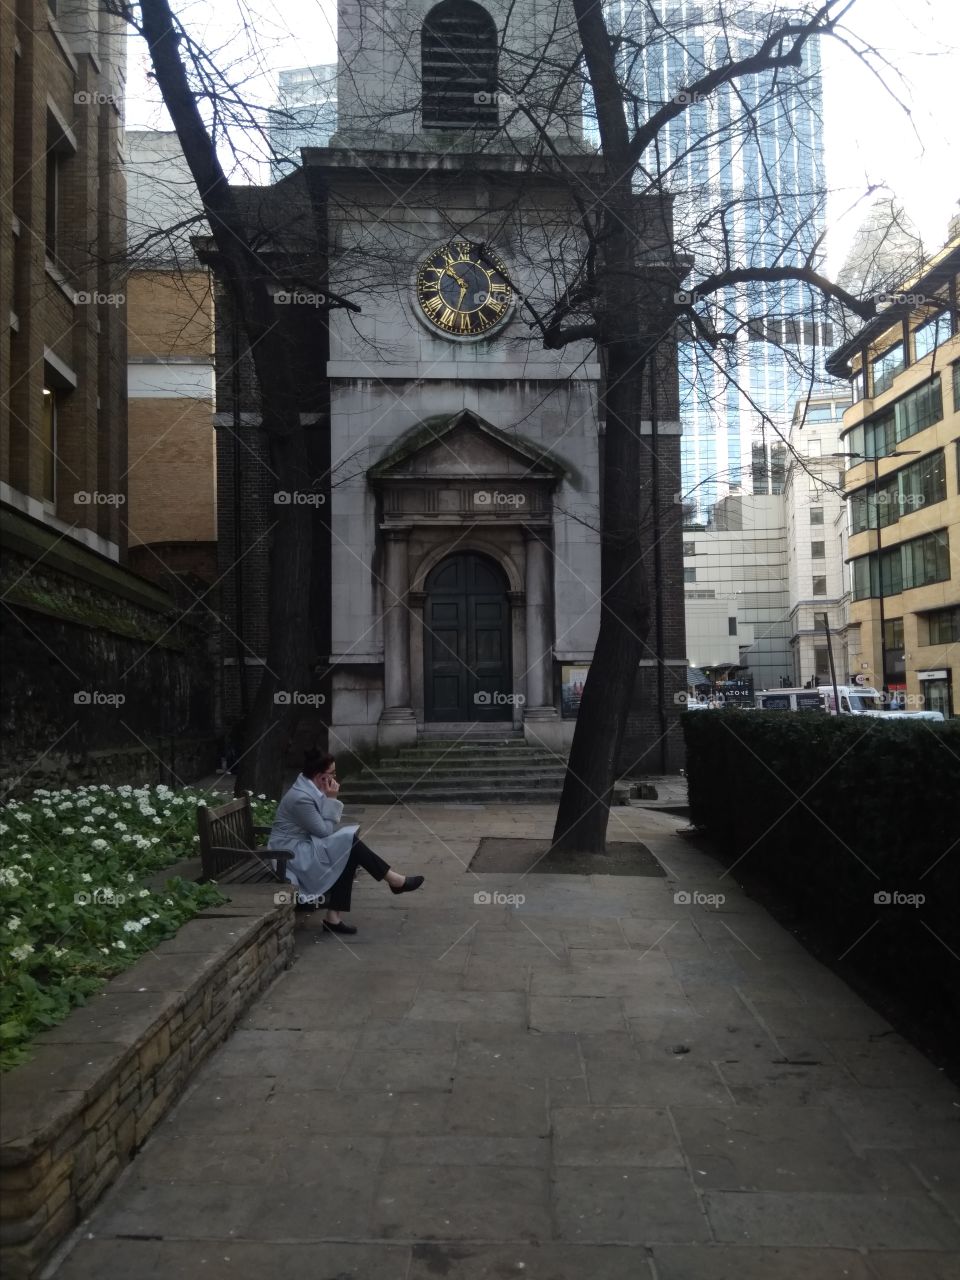 Church Entrance, East London, United Kingdom